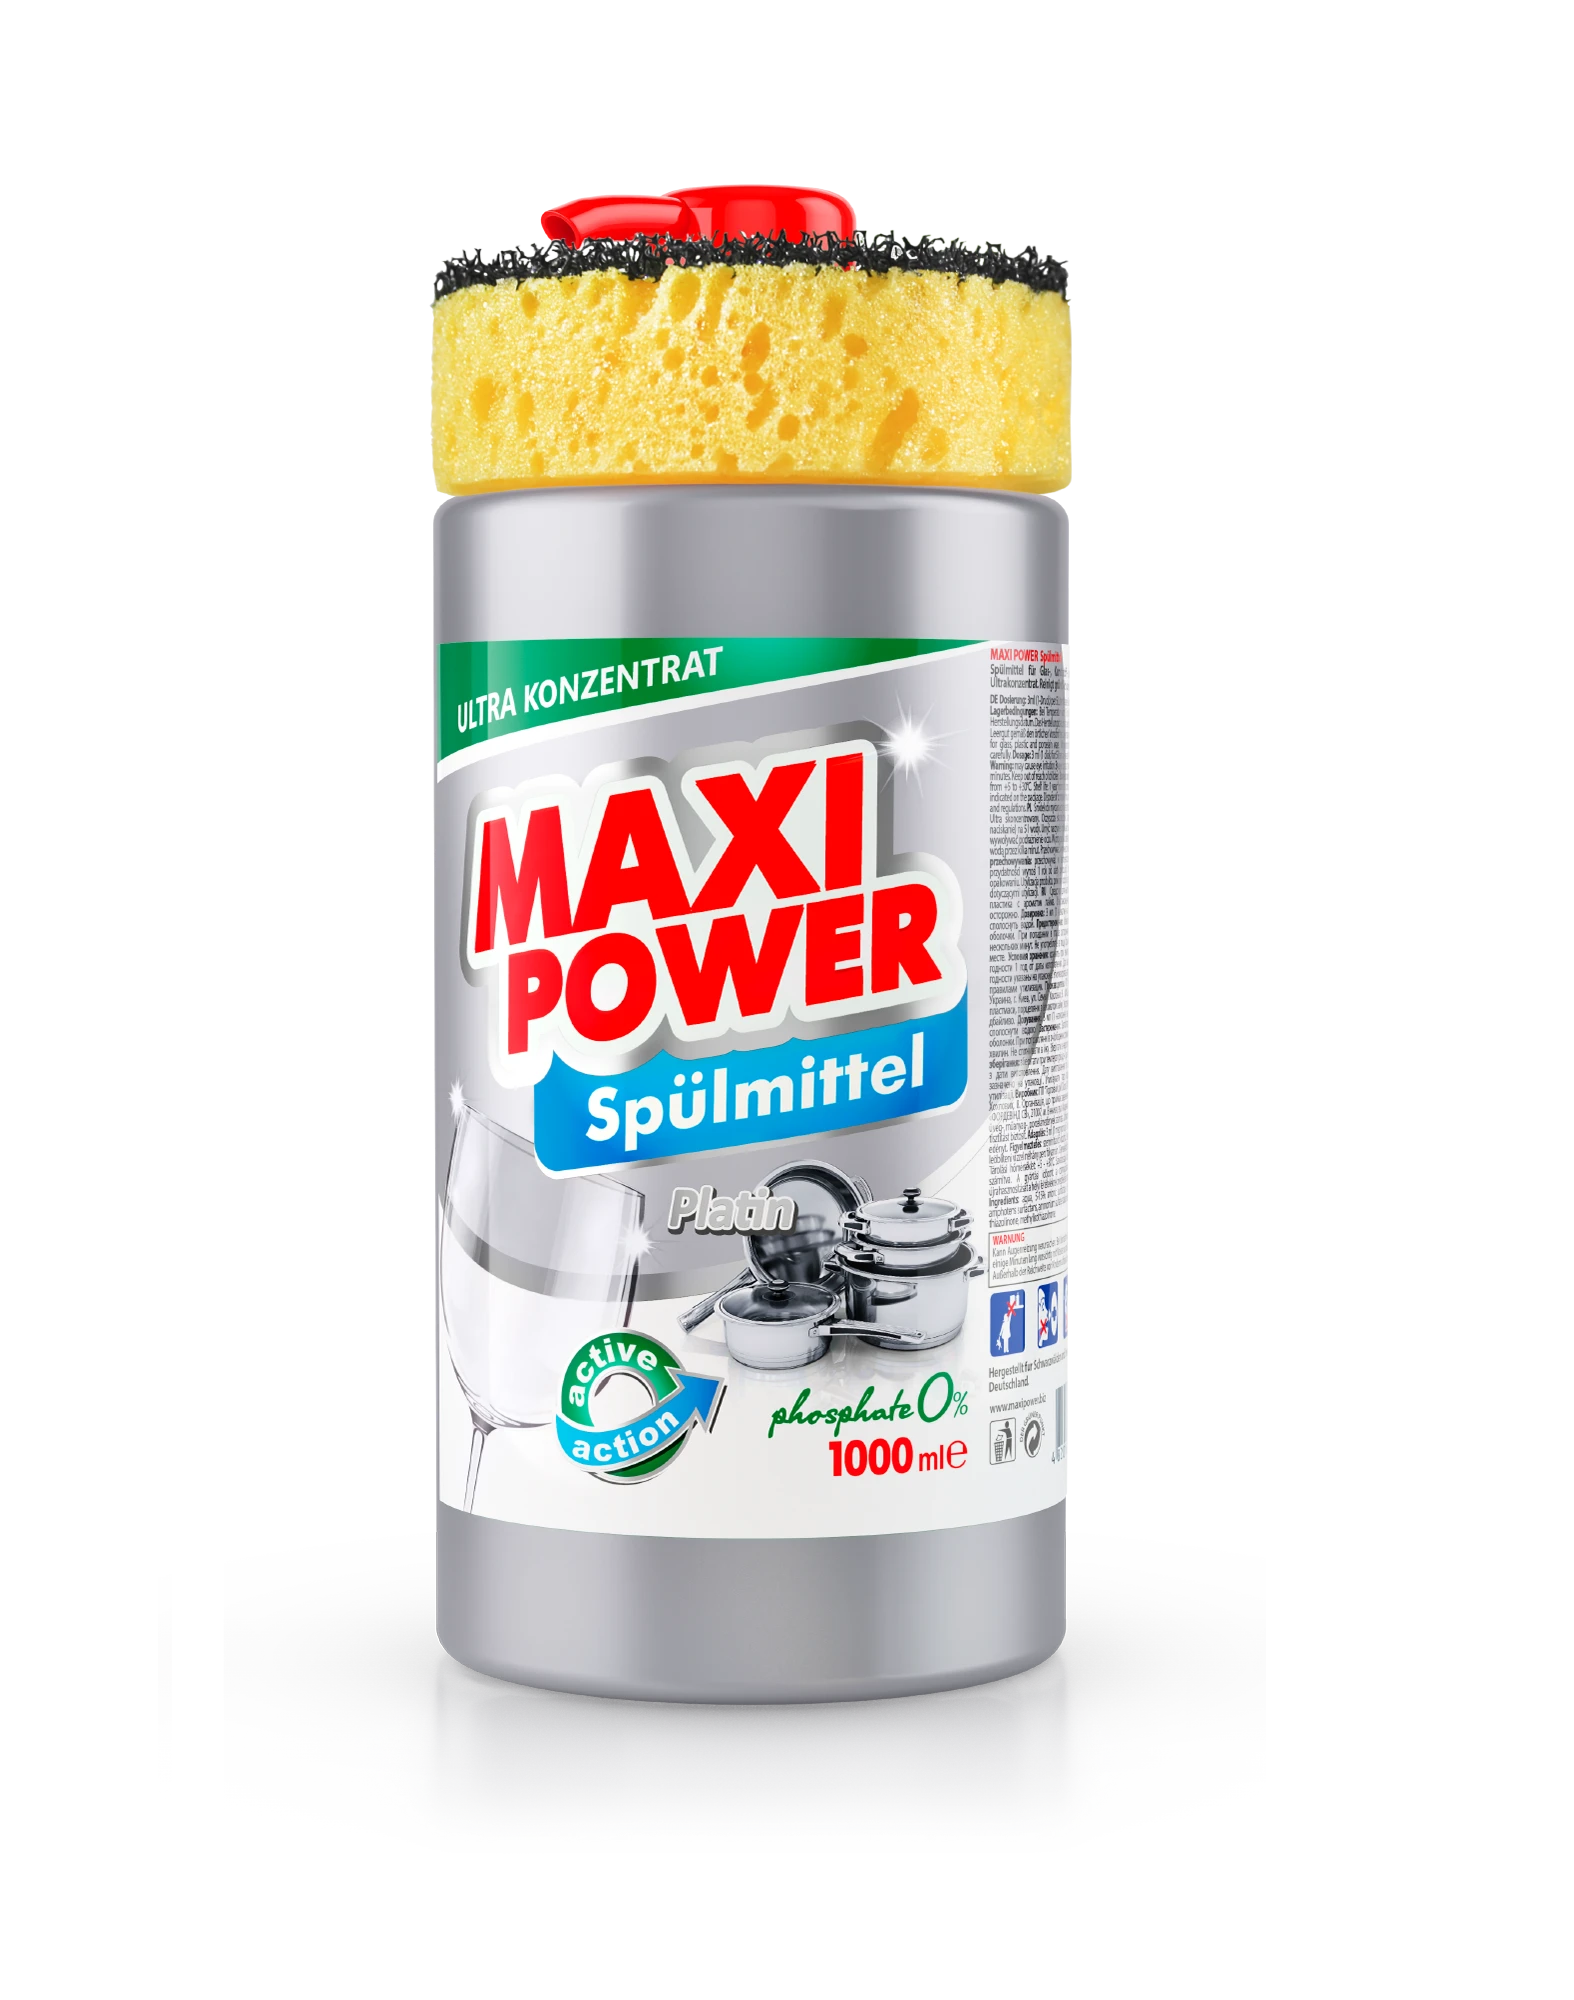 Maxi Power Средство для посуды​ Platinum